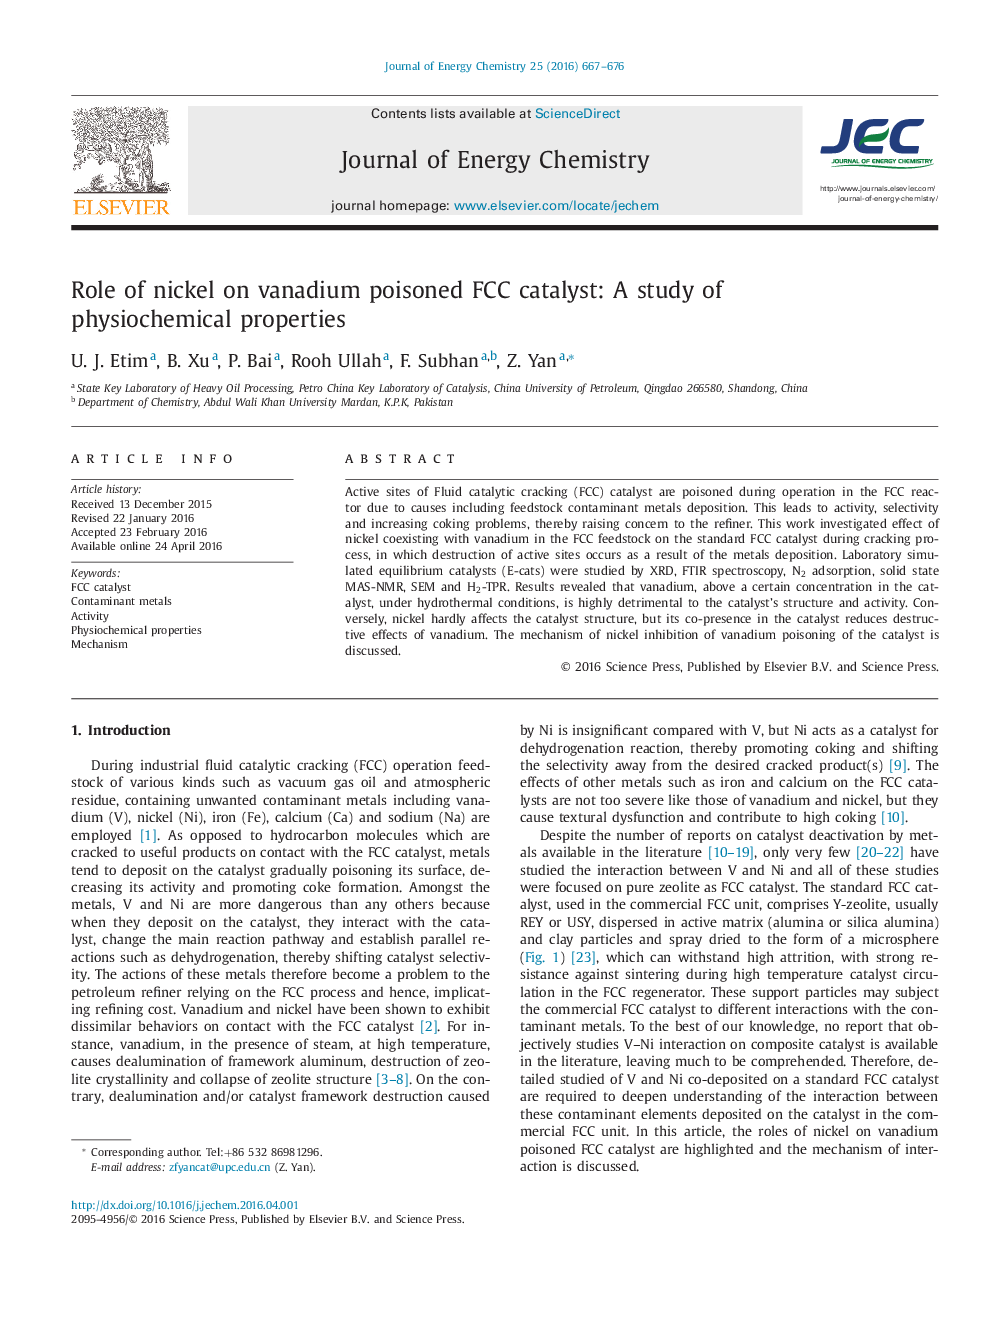 نقش نیکل بر روی کاتالیزور FCC مسموم وانادیوم: مطالعه خواص فیزیکی